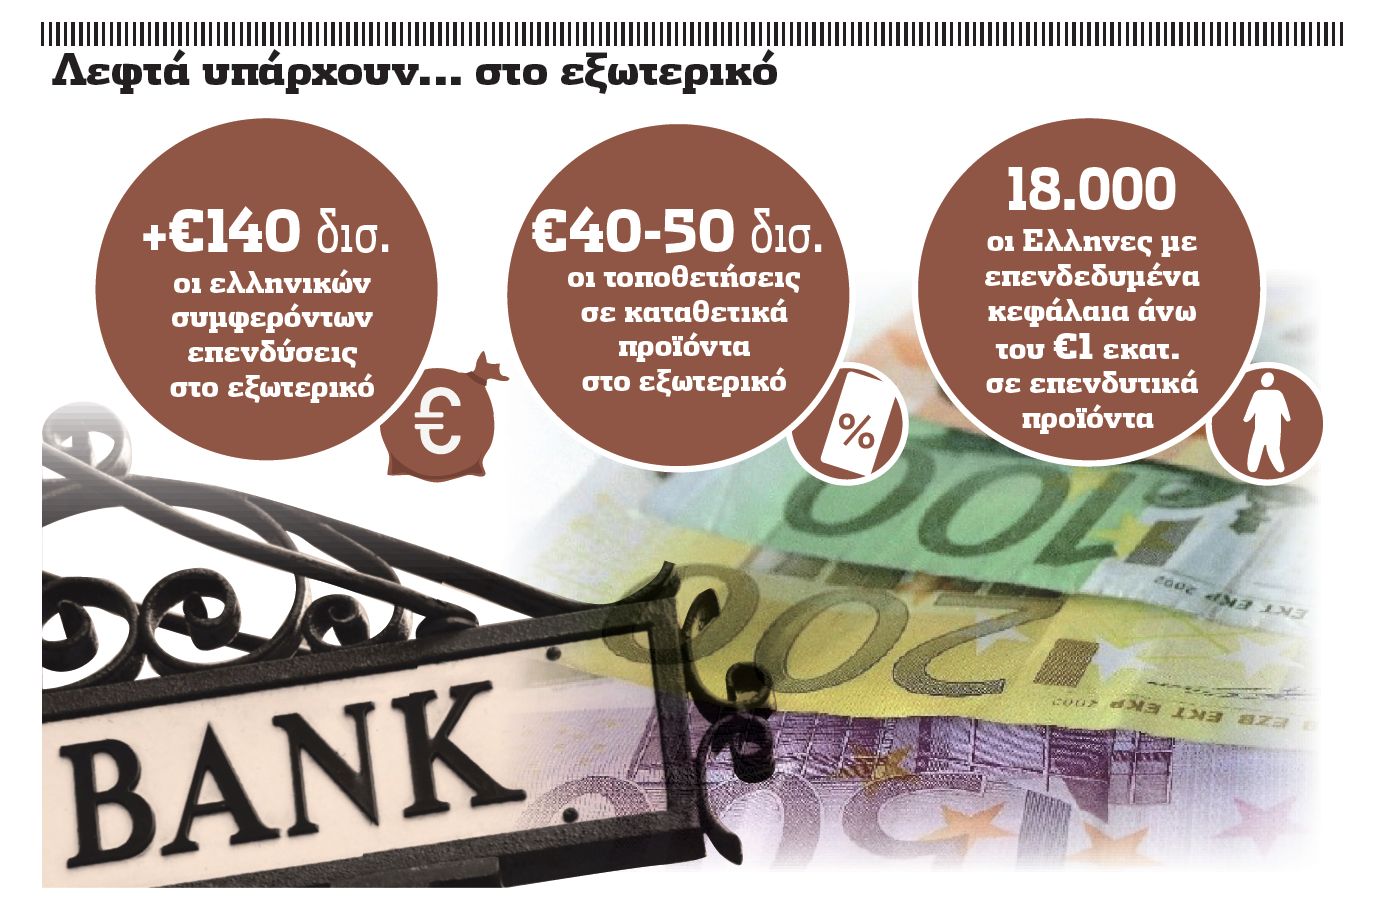 Πάνω από €140 δισ. τα ελληνικά κεφάλαια του εξωτερικού